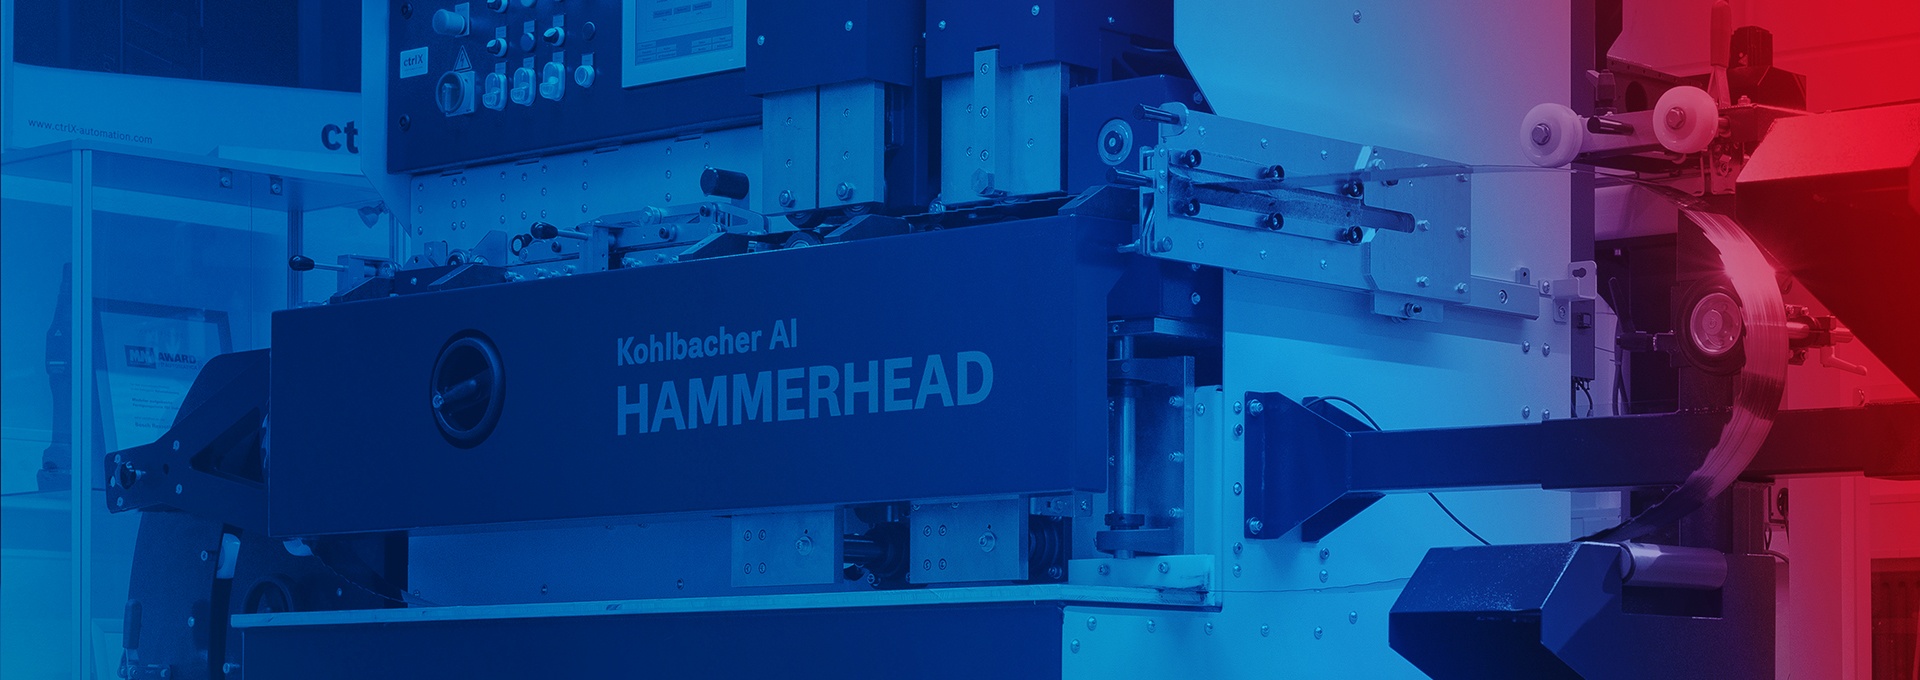 Kohlbacher, AI - Hammerhead-Sägeblattschärfmaschine ausgerüstet mit ctrlX AUTOMATION Komponenent